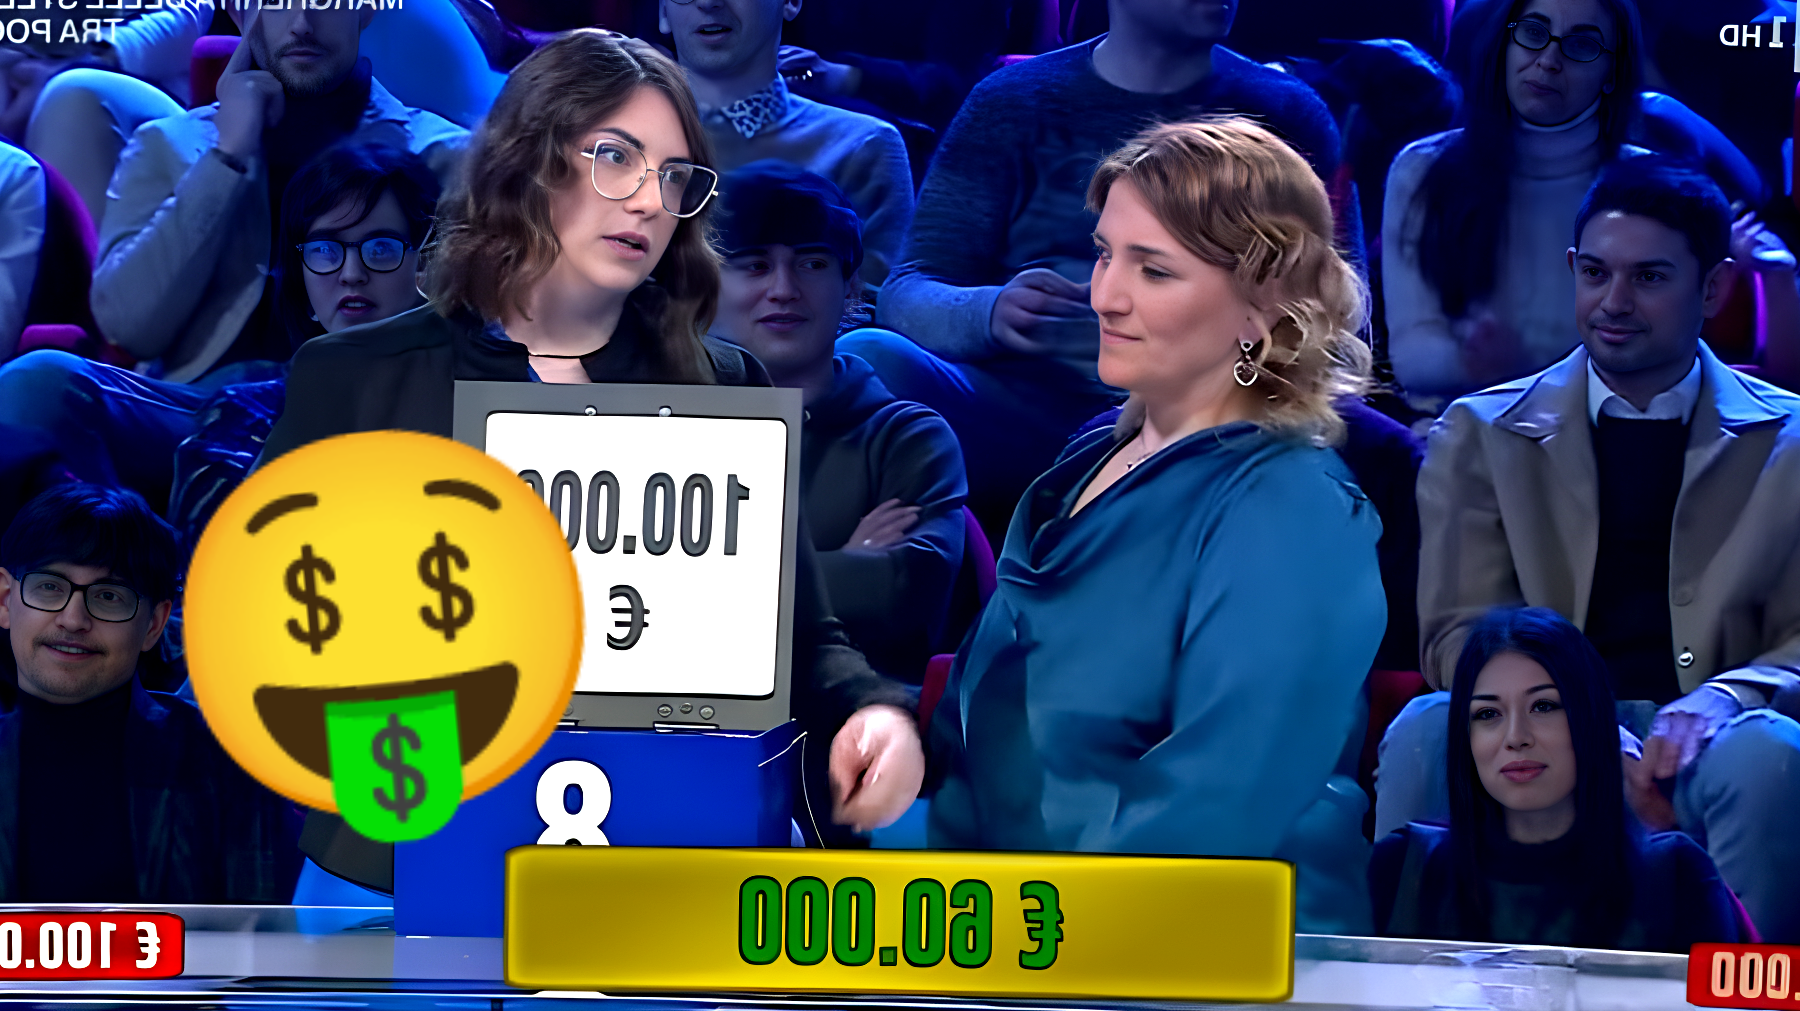 Affari Tuoi: il concorrente sogna 100.000€ nel pacco 8 e li vince davvero, ma accetta solo 60.000€, scopri il motivo!